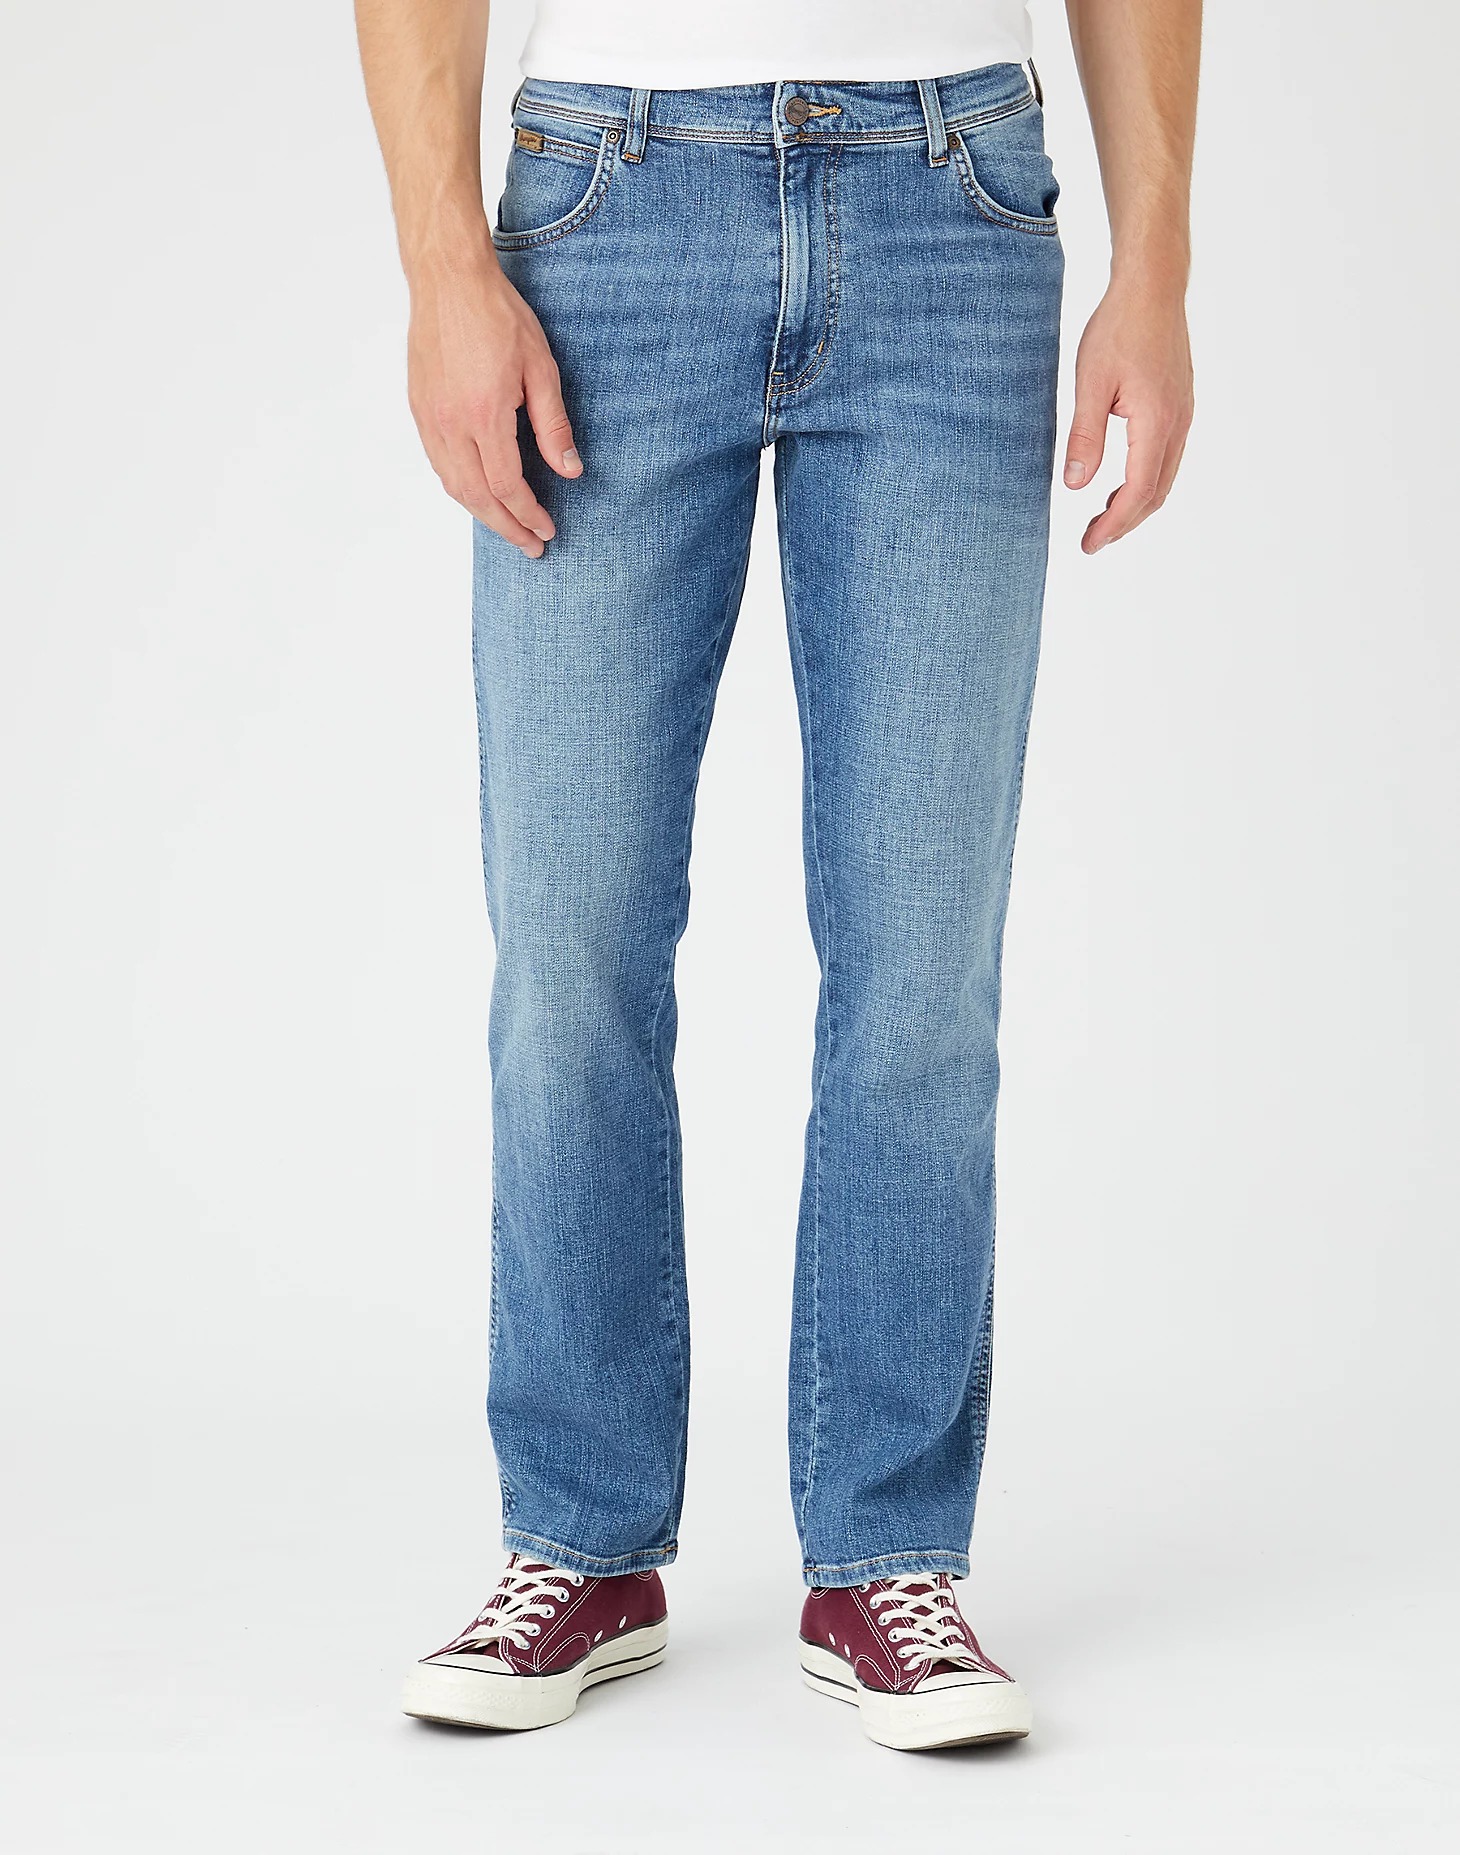 фото Джинсы мужские wrangler men texas jeans синие 36/36